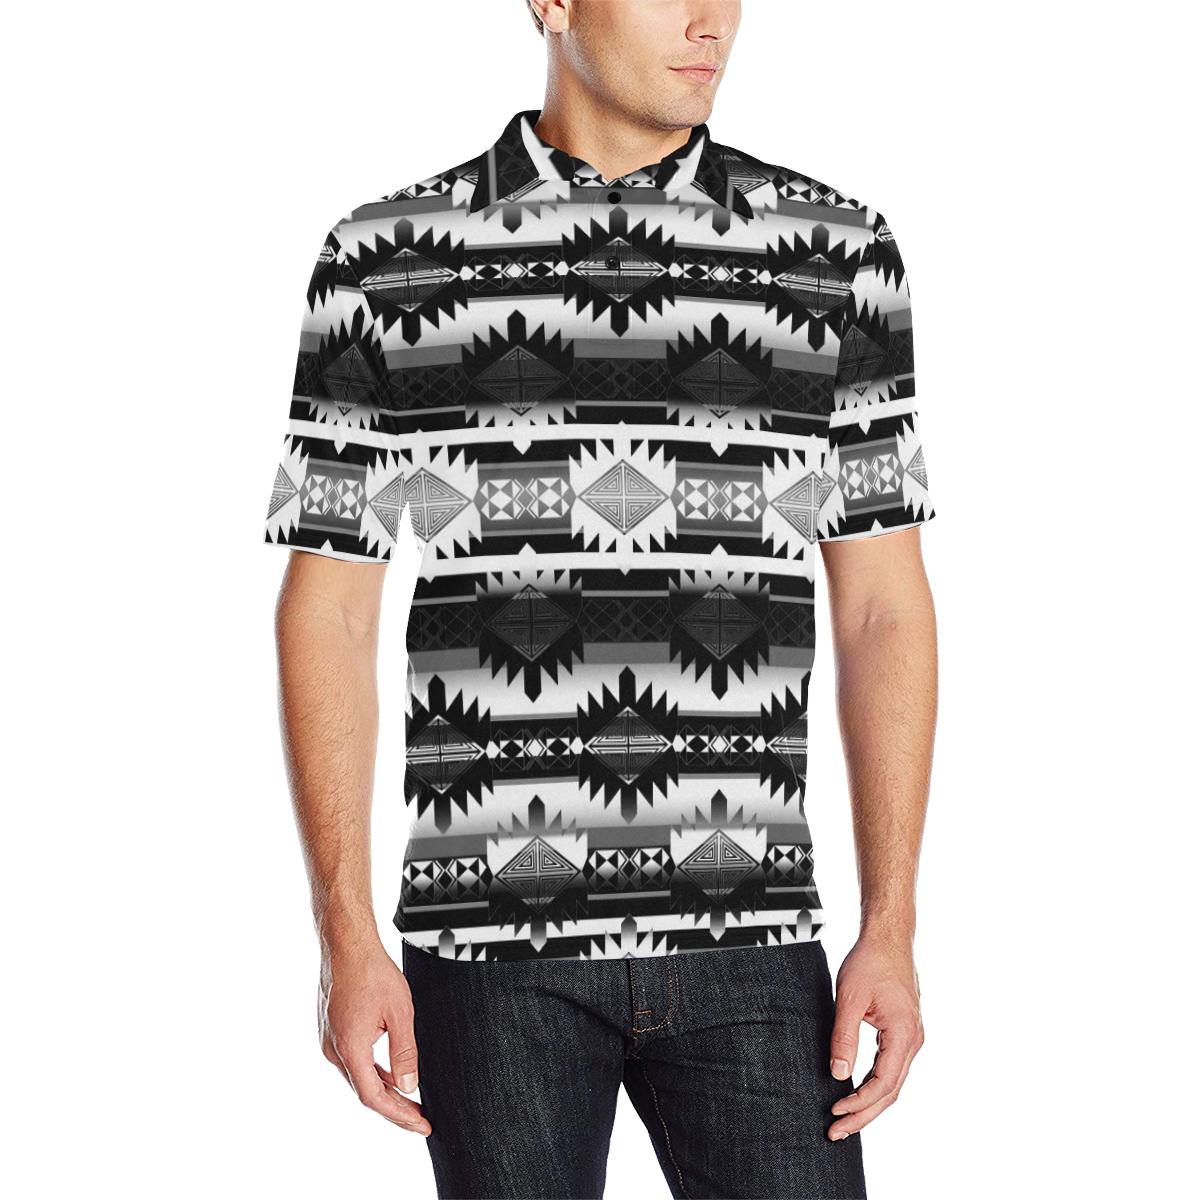 Okotoks Black and White Men's All Over Print Polo Shirt (Model T55) Men's Polo Shirt (Model T55) e-joyer 